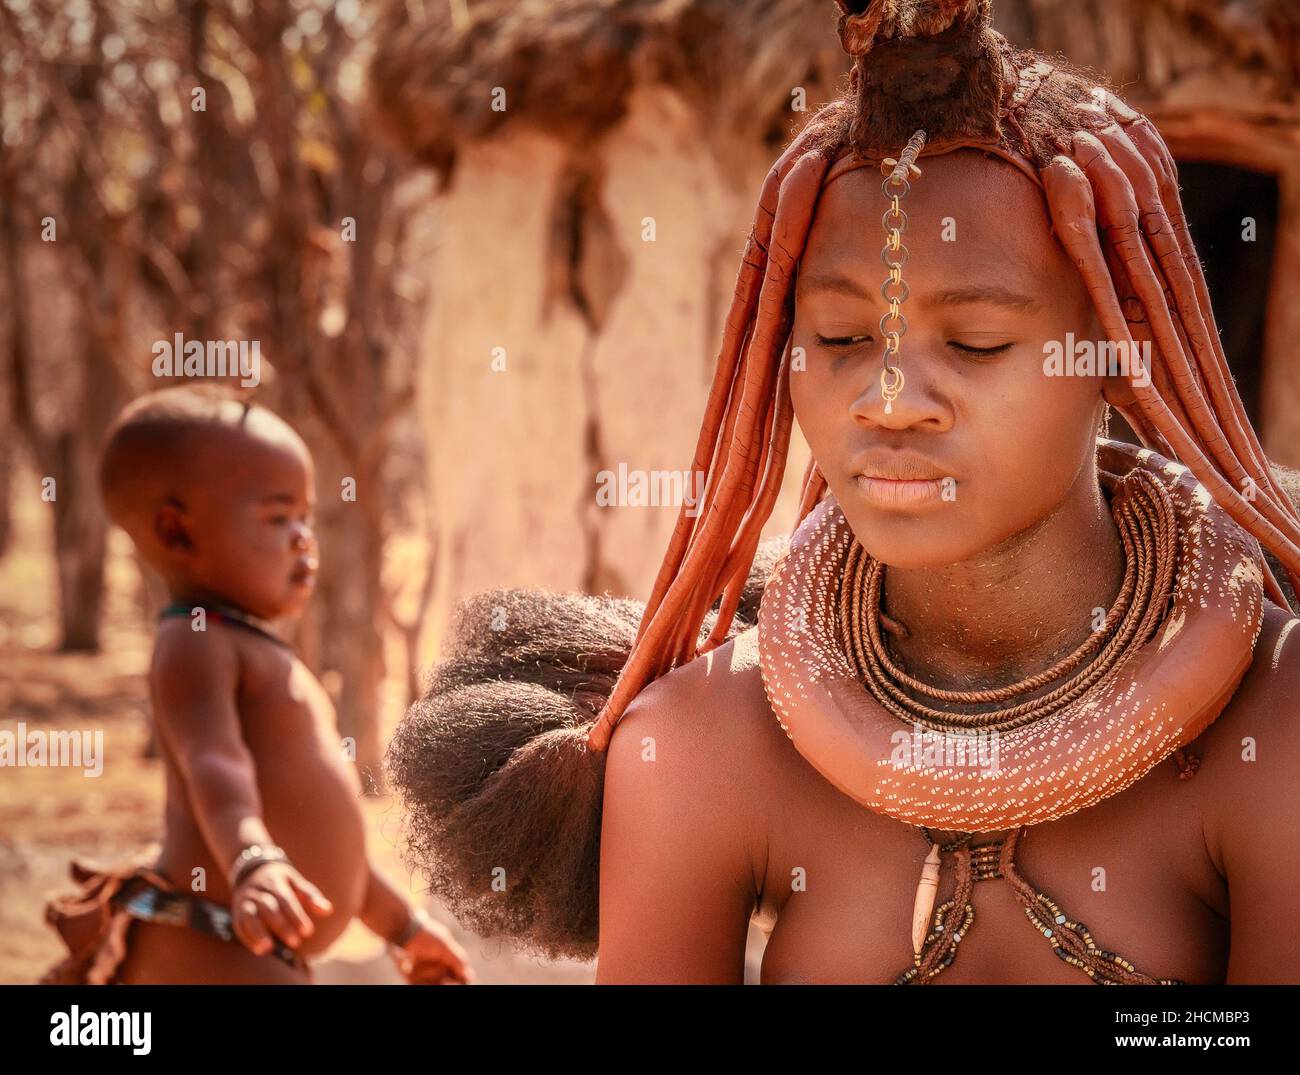 Une femme africaine portant des bijoux tribaux Himba traditionnels et la coiffure avec son jeune enfant à l'arrière-plan dans la Namibie rurale. Banque D'Images